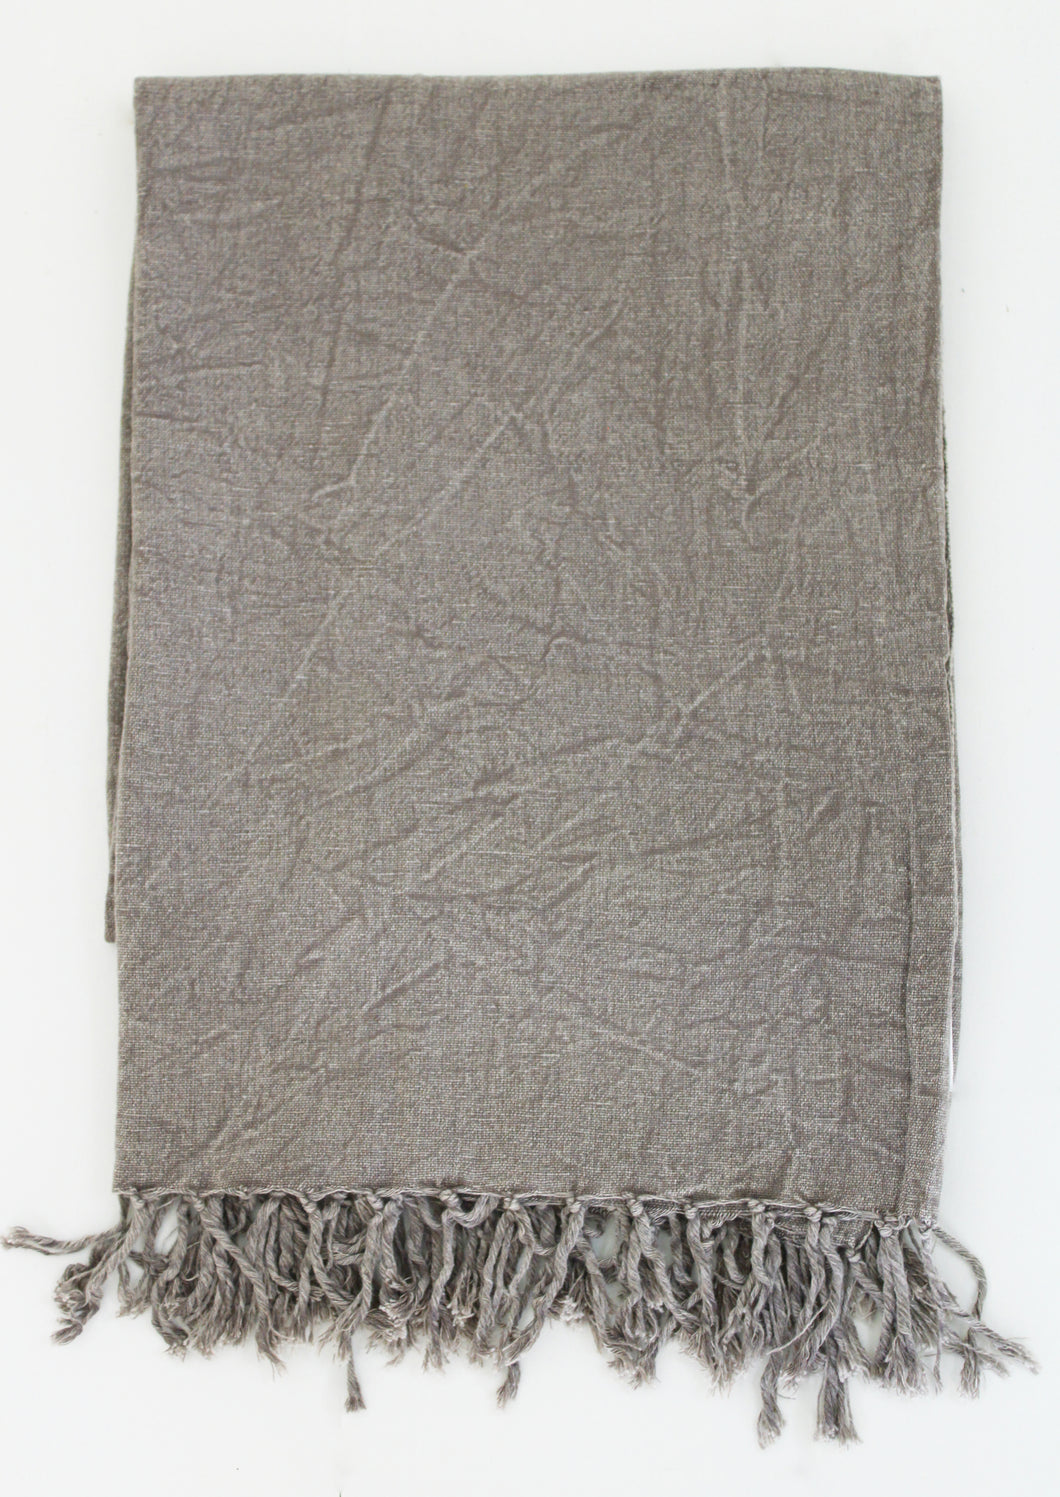 Leichte Decke in Grau oder Taupe, Stone washed Optik, 130 x 170 cm, 100% Baumwolle